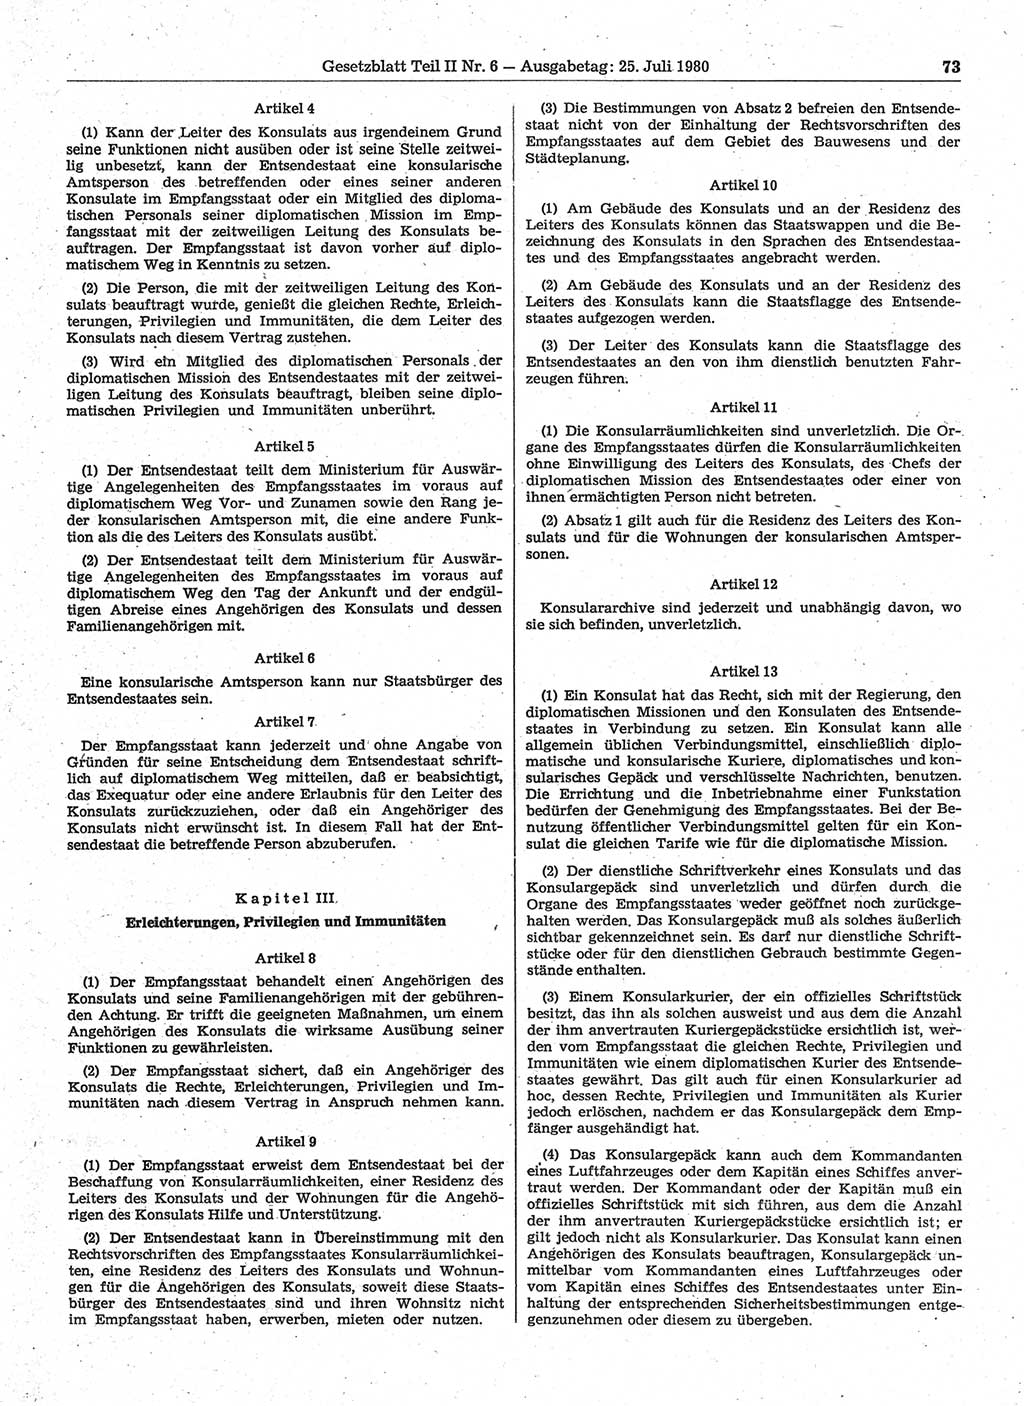 Gesetzblatt (GBl.) der Deutschen Demokratischen Republik (DDR) Teil ⅠⅠ 1980, Seite 73 (GBl. DDR ⅠⅠ 1980, S. 73)